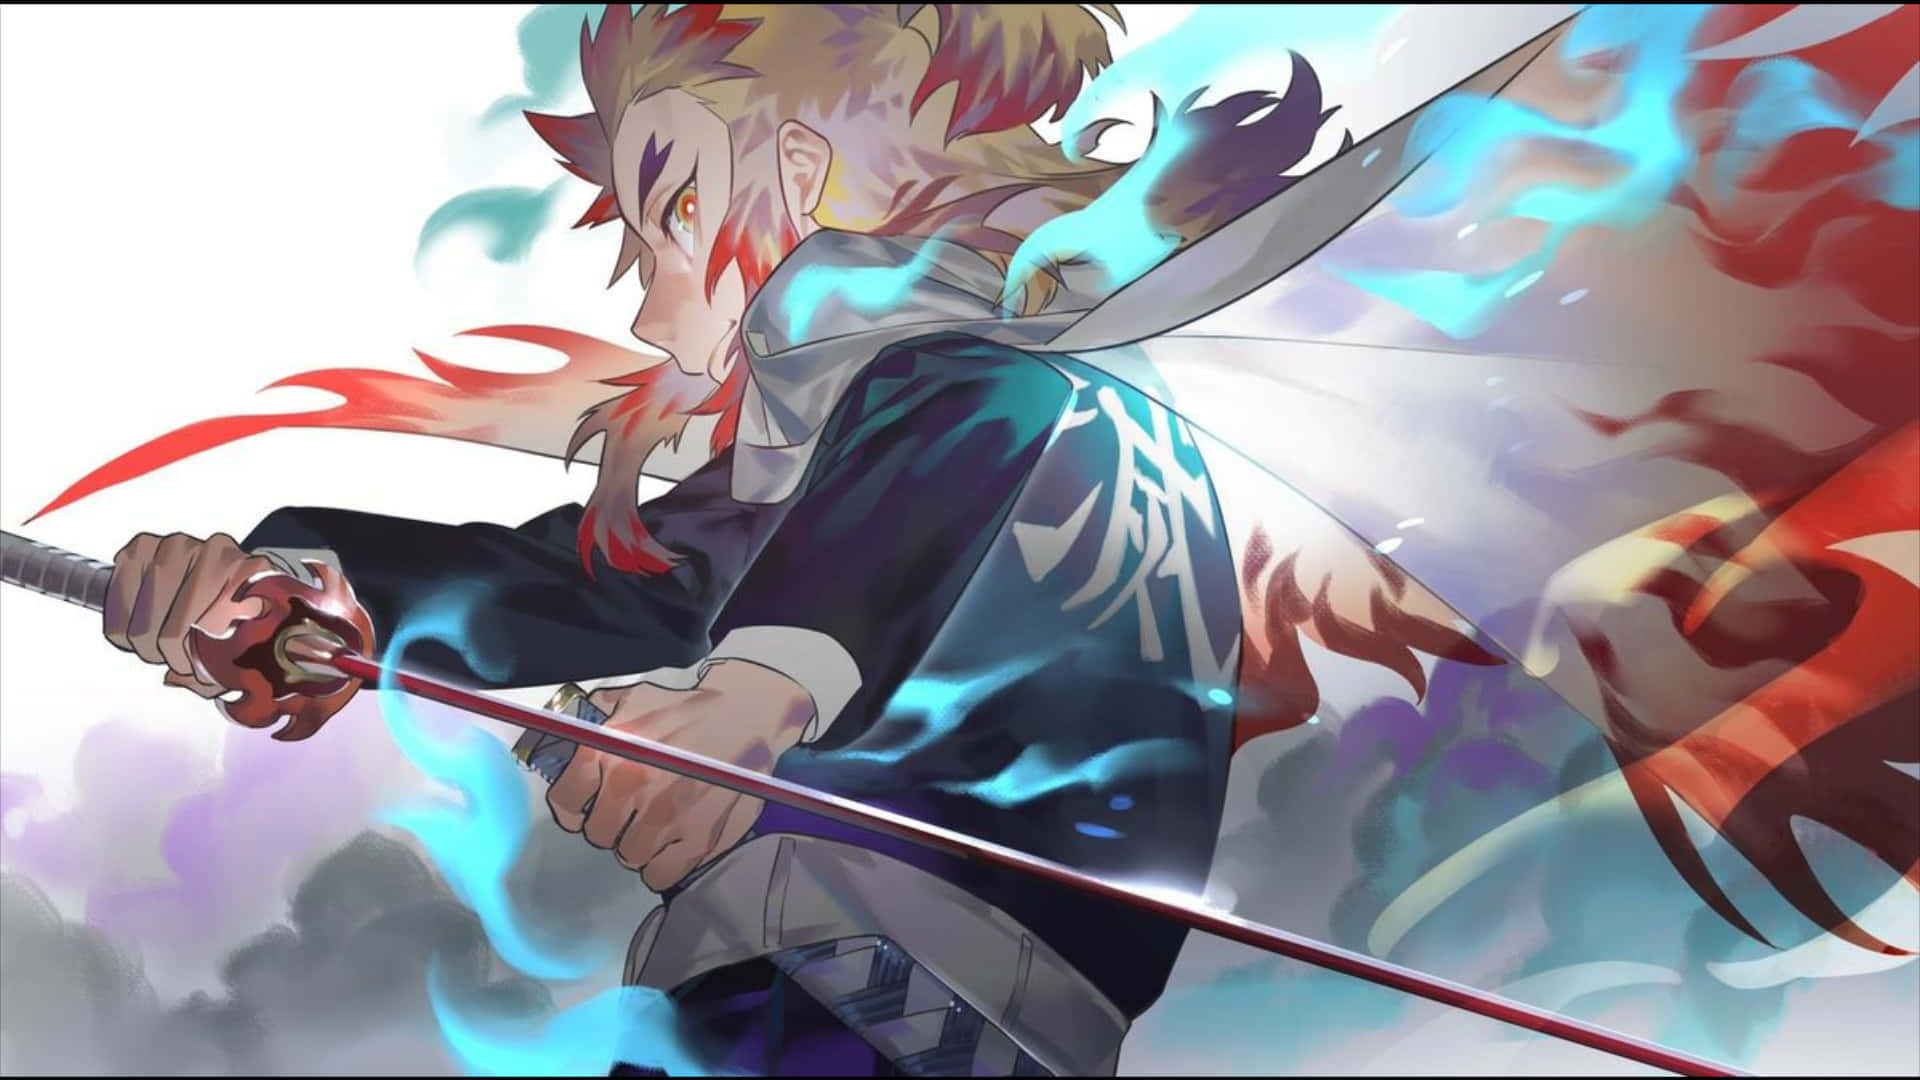 Rengoku wielding his fiery sword in a powerful stance Wallpaper